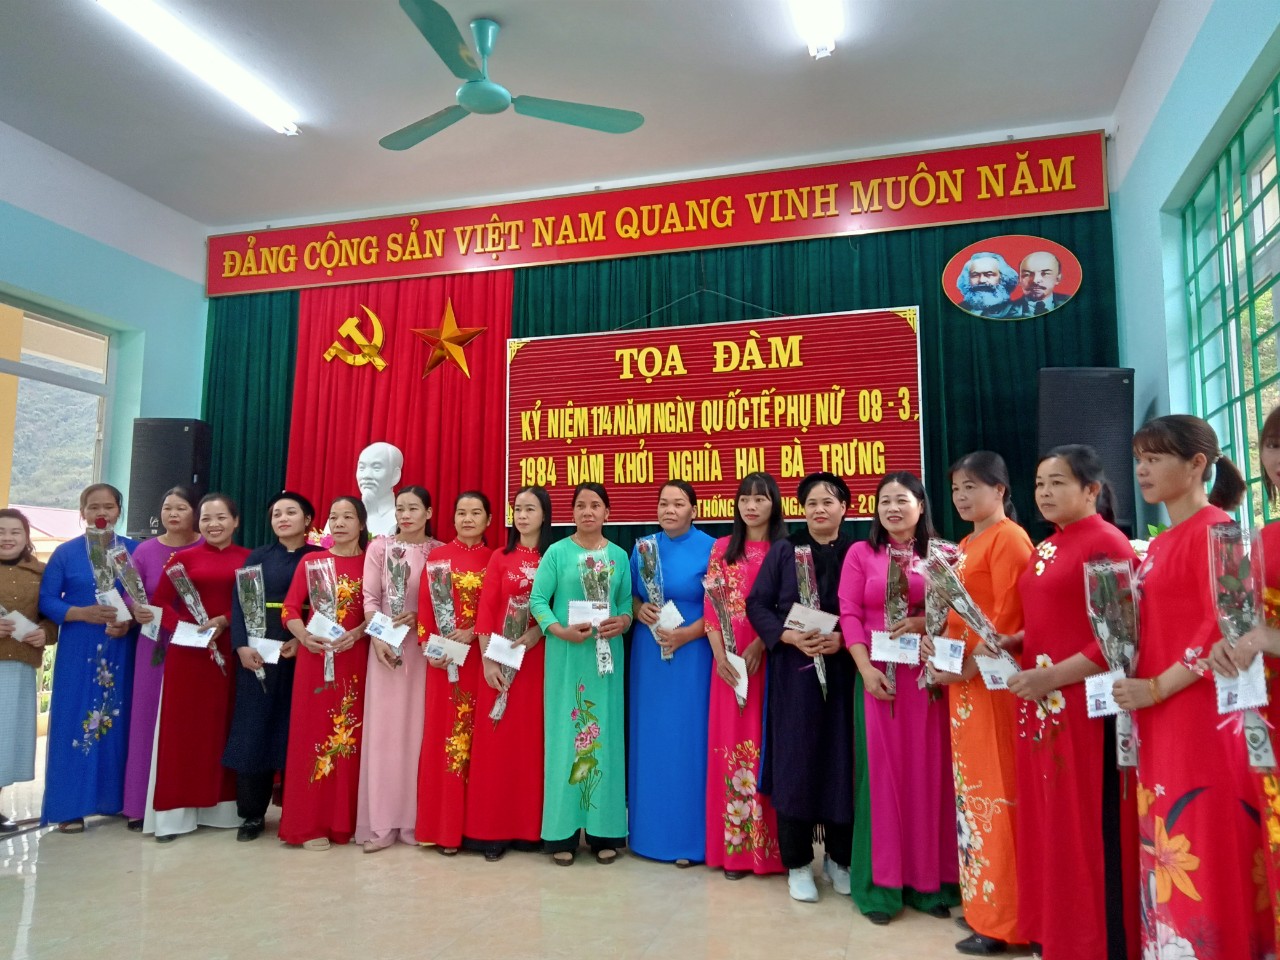 CĐCS xã Thống Nhất và CĐCS khối trường học Việt Chu, Thái Đức xã Thống Nhất tổ chức Tọa đàm (1)